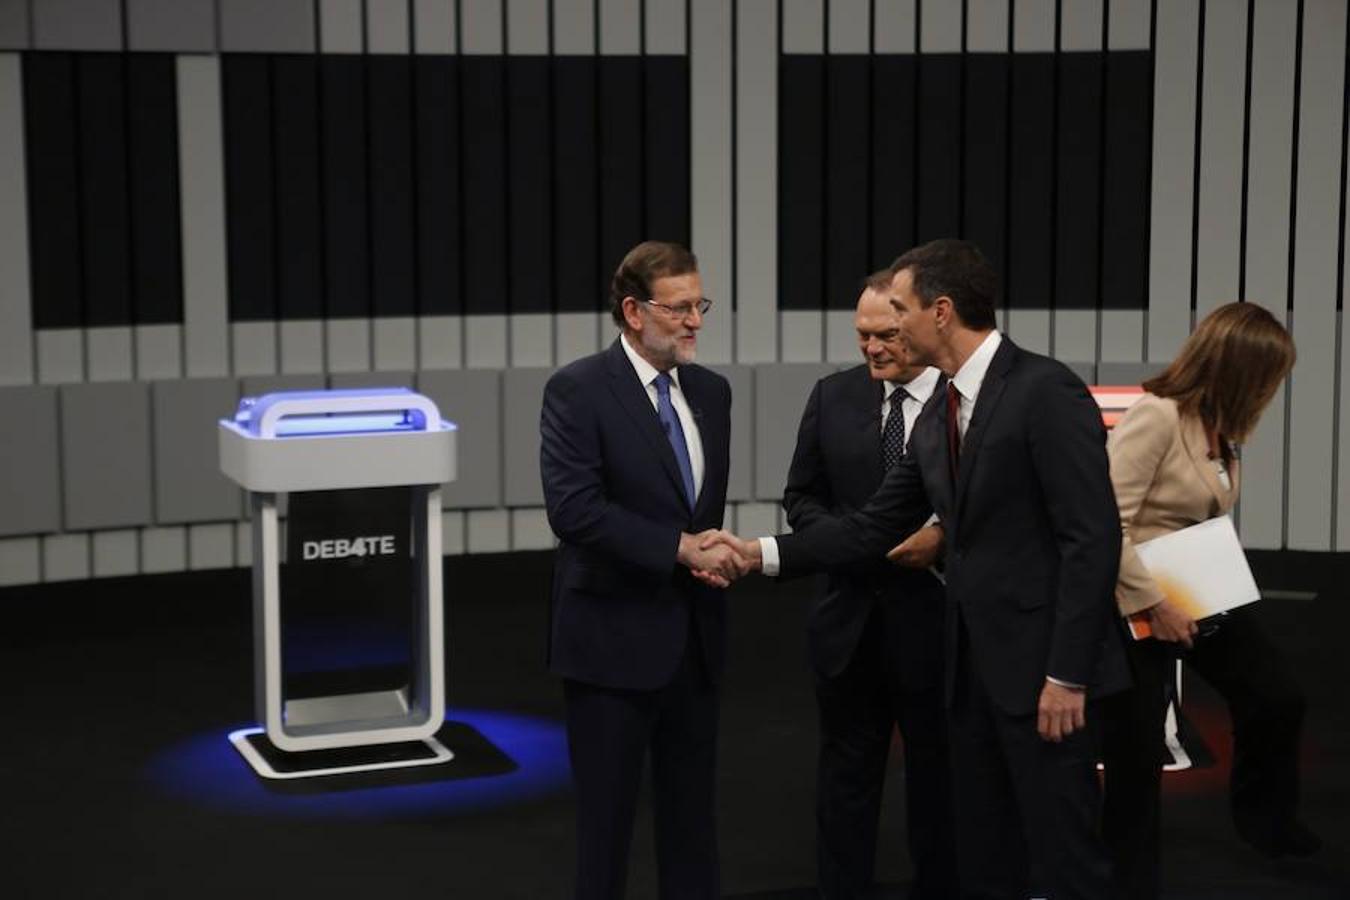 Rajoy y Sánchez se dan la mano antes de ocupar sus respectivos atriles